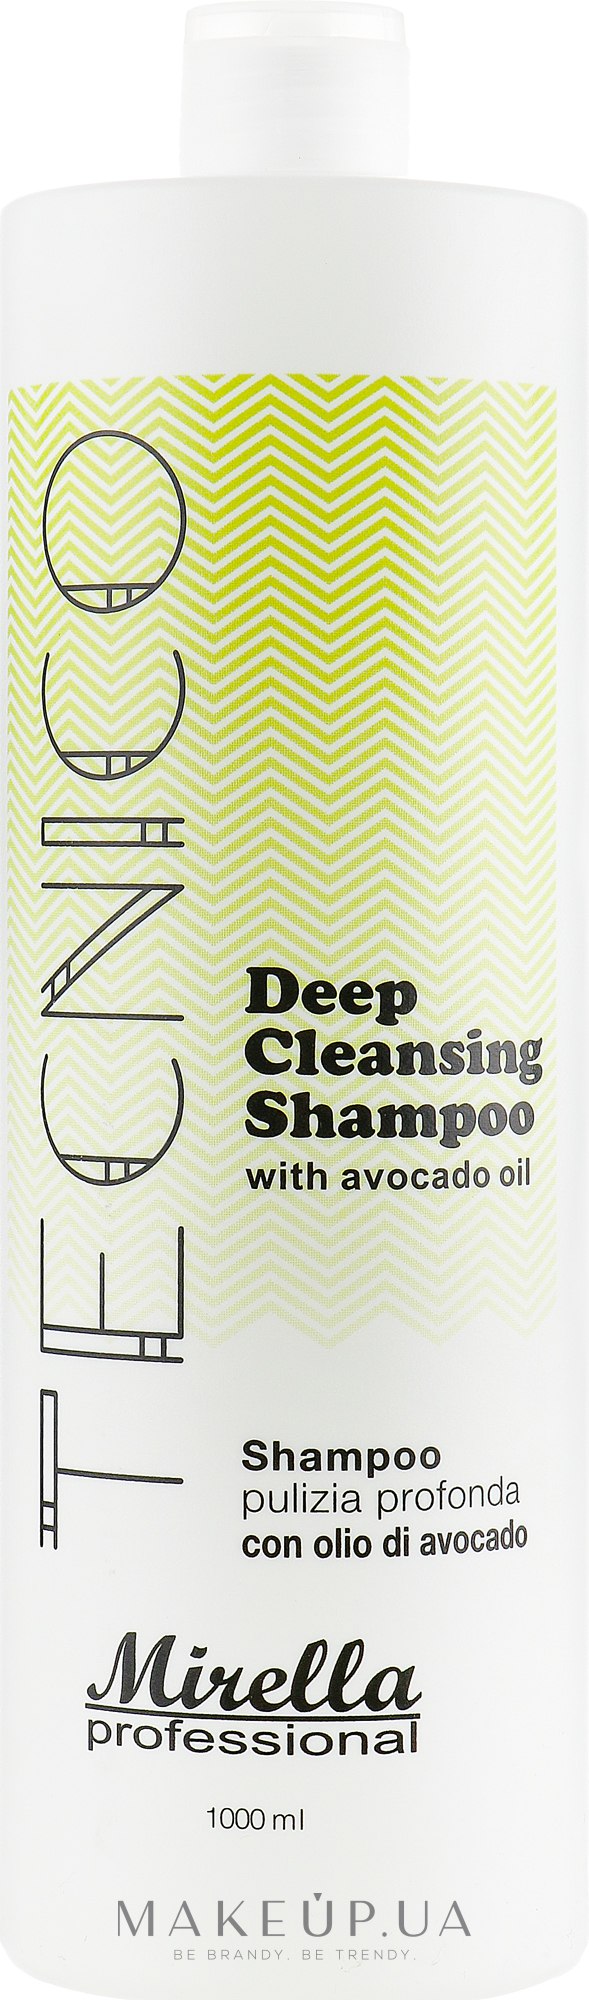 Шампунь глубокой очистки для волос с маслом авокадо - Mirella Professional Tecnico Deep Cleansing Shampoo — фото 1000ml